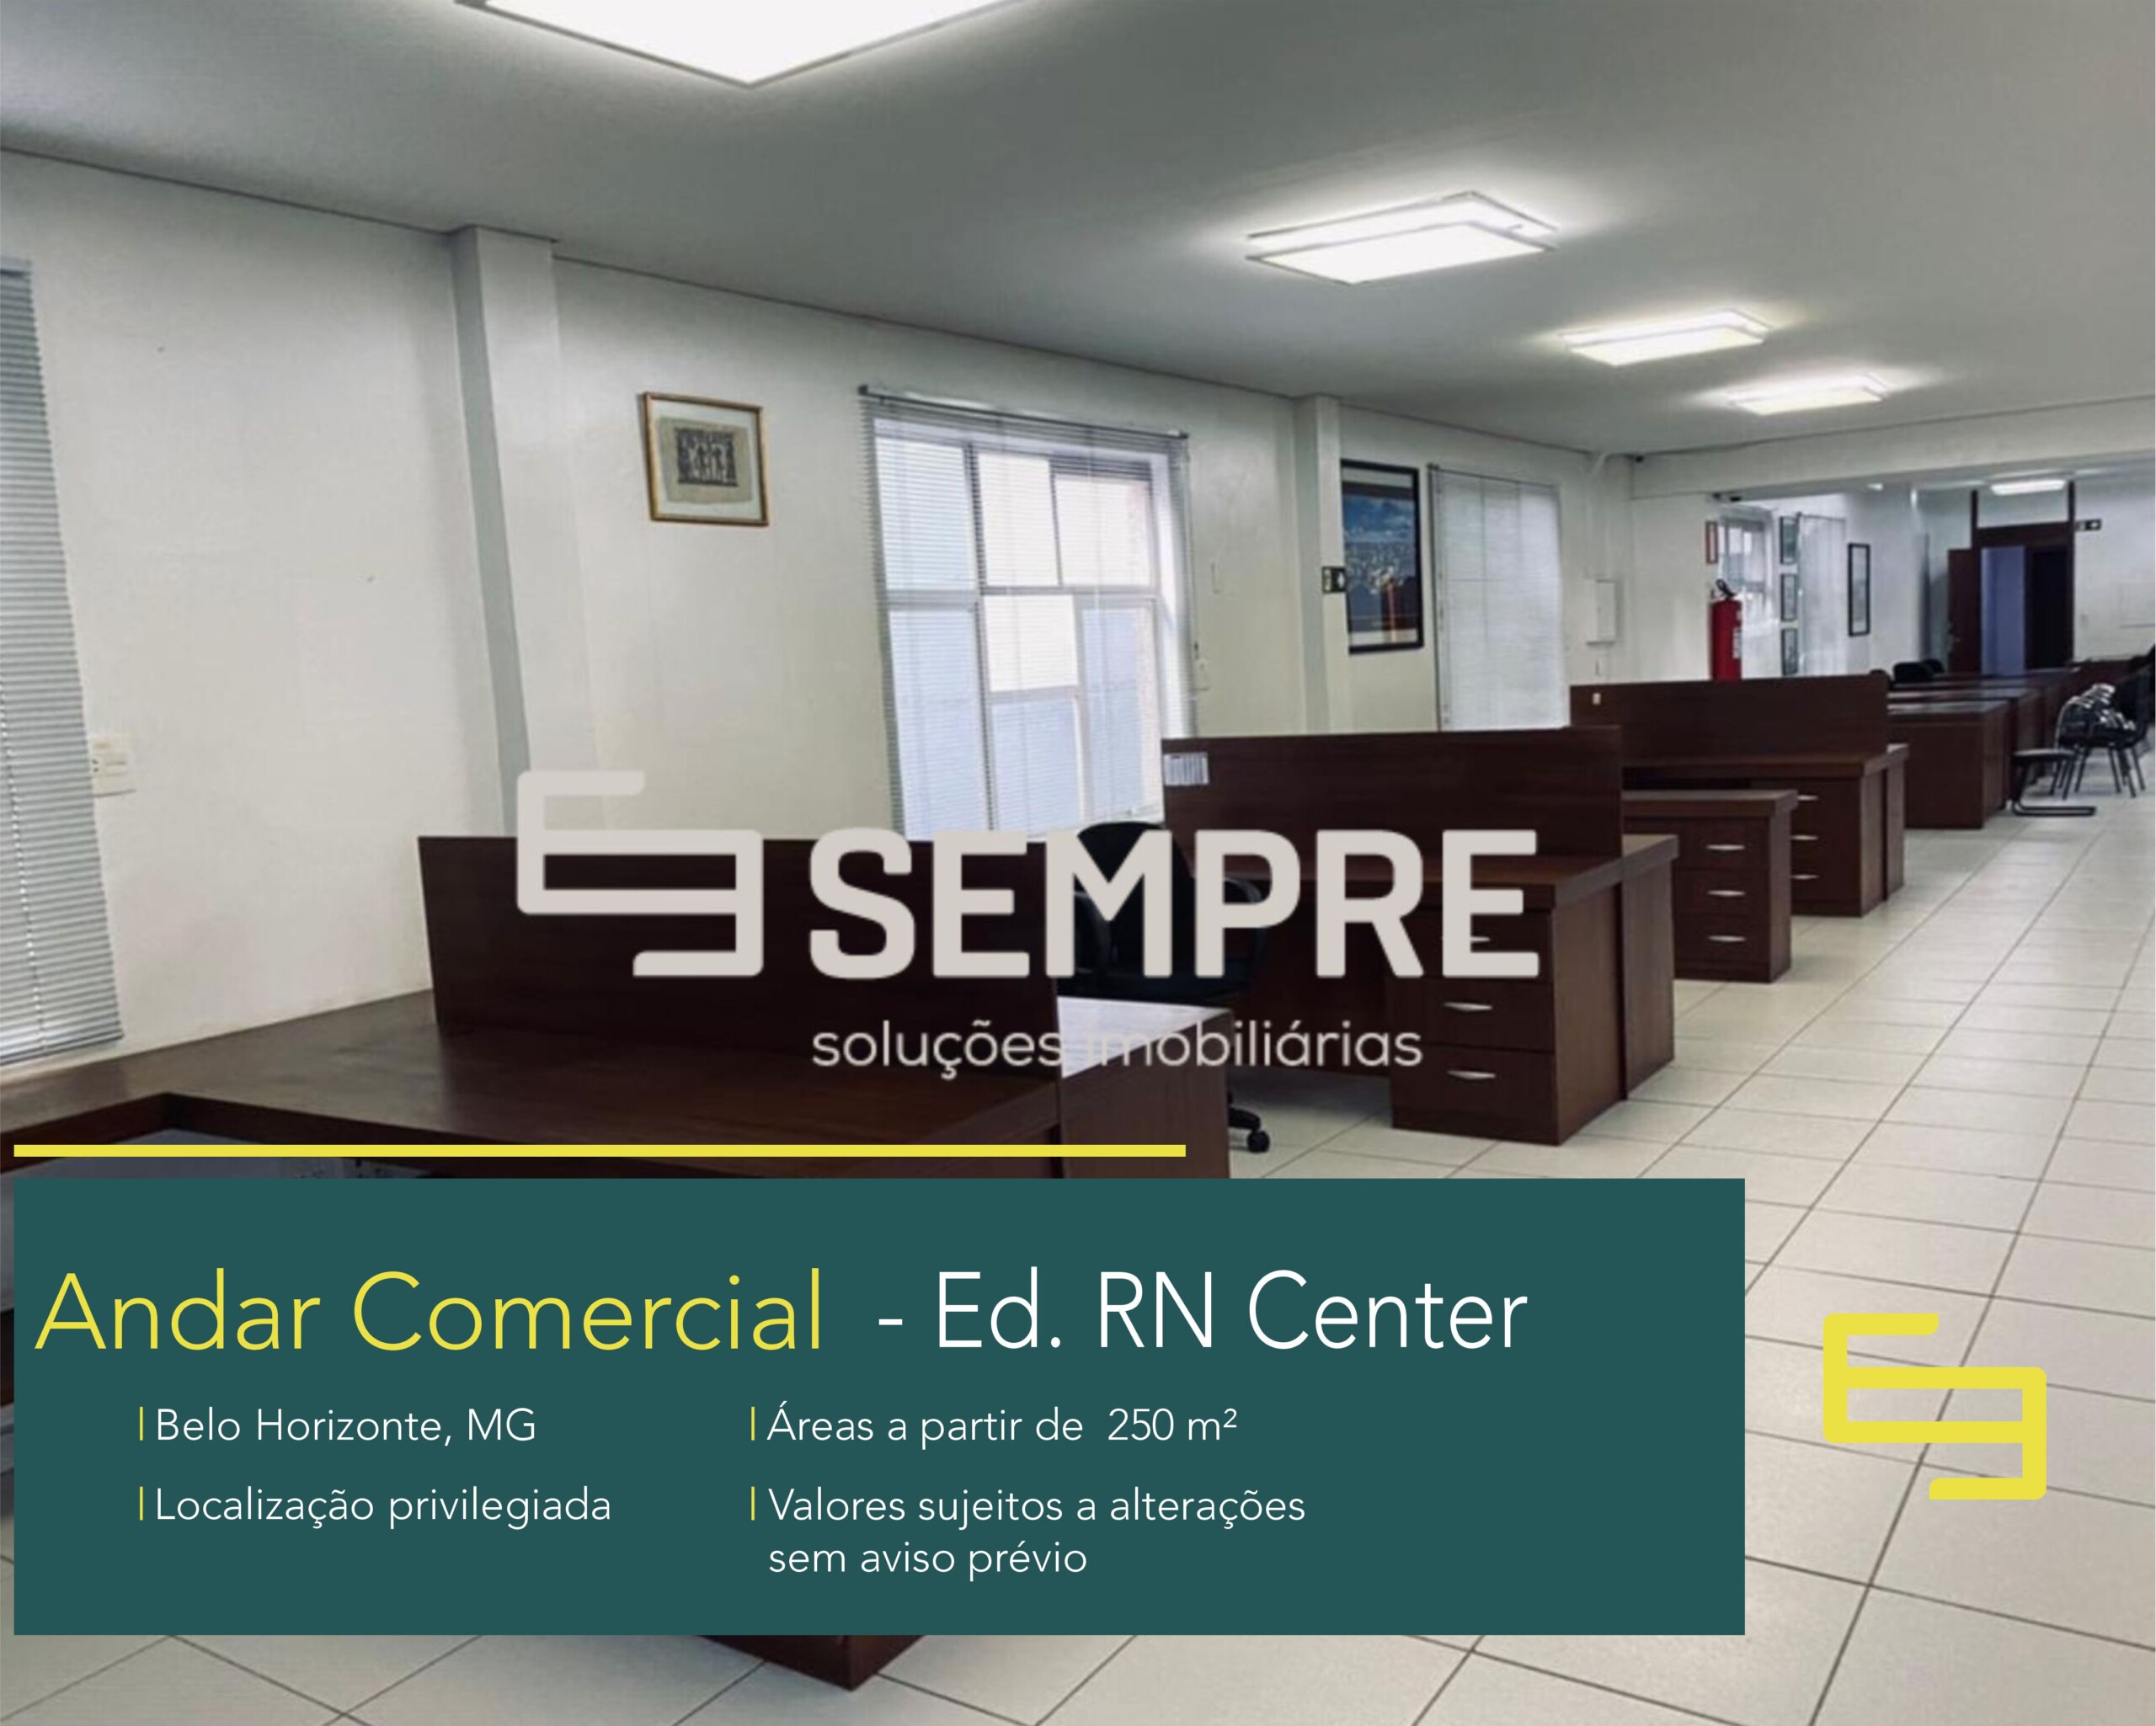 Andar comercial na Savassi - Belo Horizonte. Edifício RN Center, este prédio comercial de salas corporativas para locação.